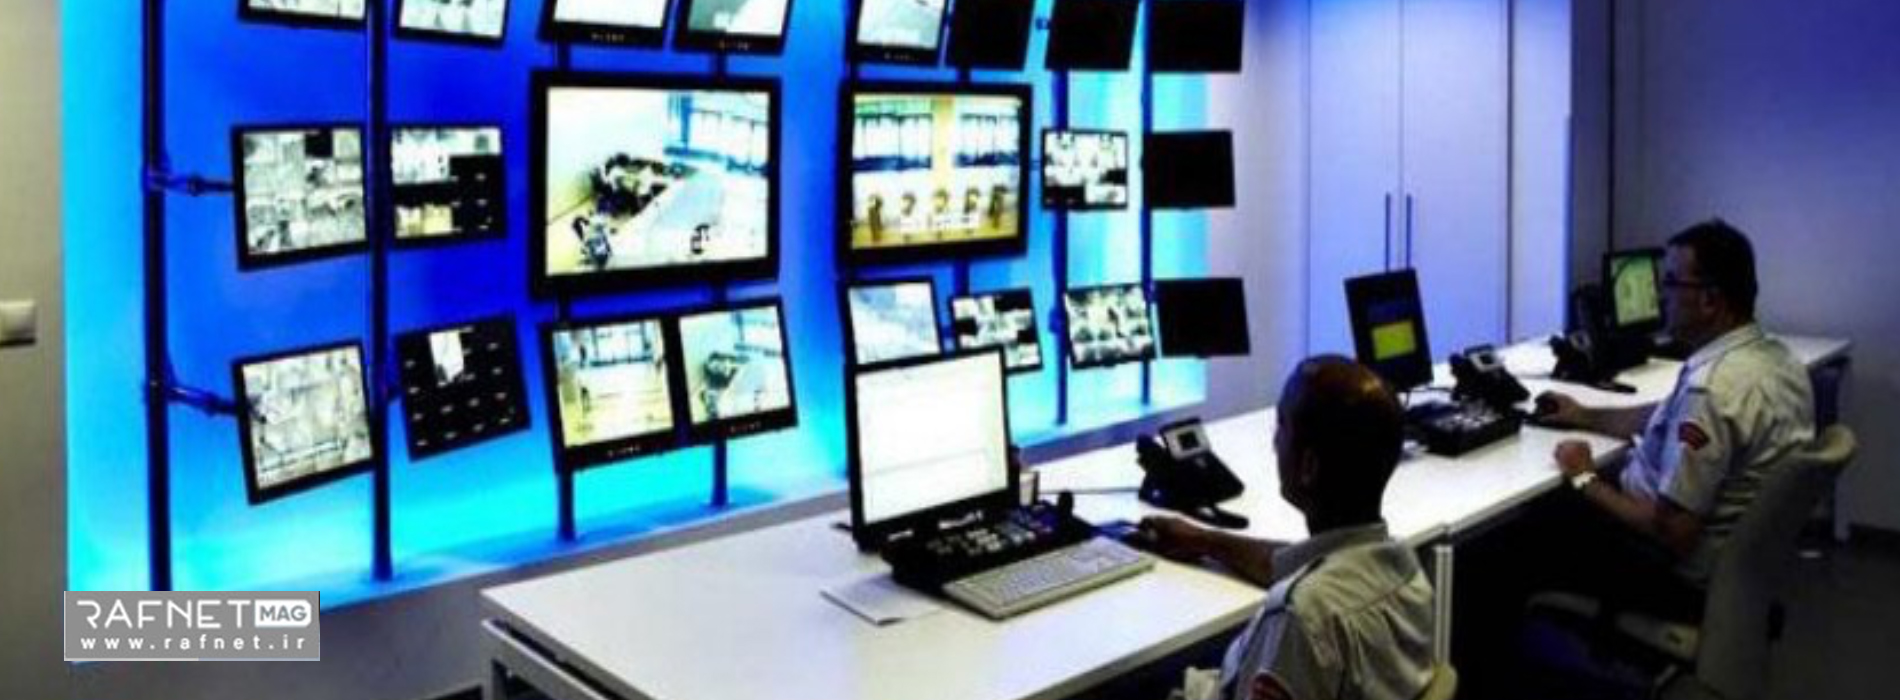 اتاق کنترل و نظارت تیم امنیتی در تاسیسات صنعتی